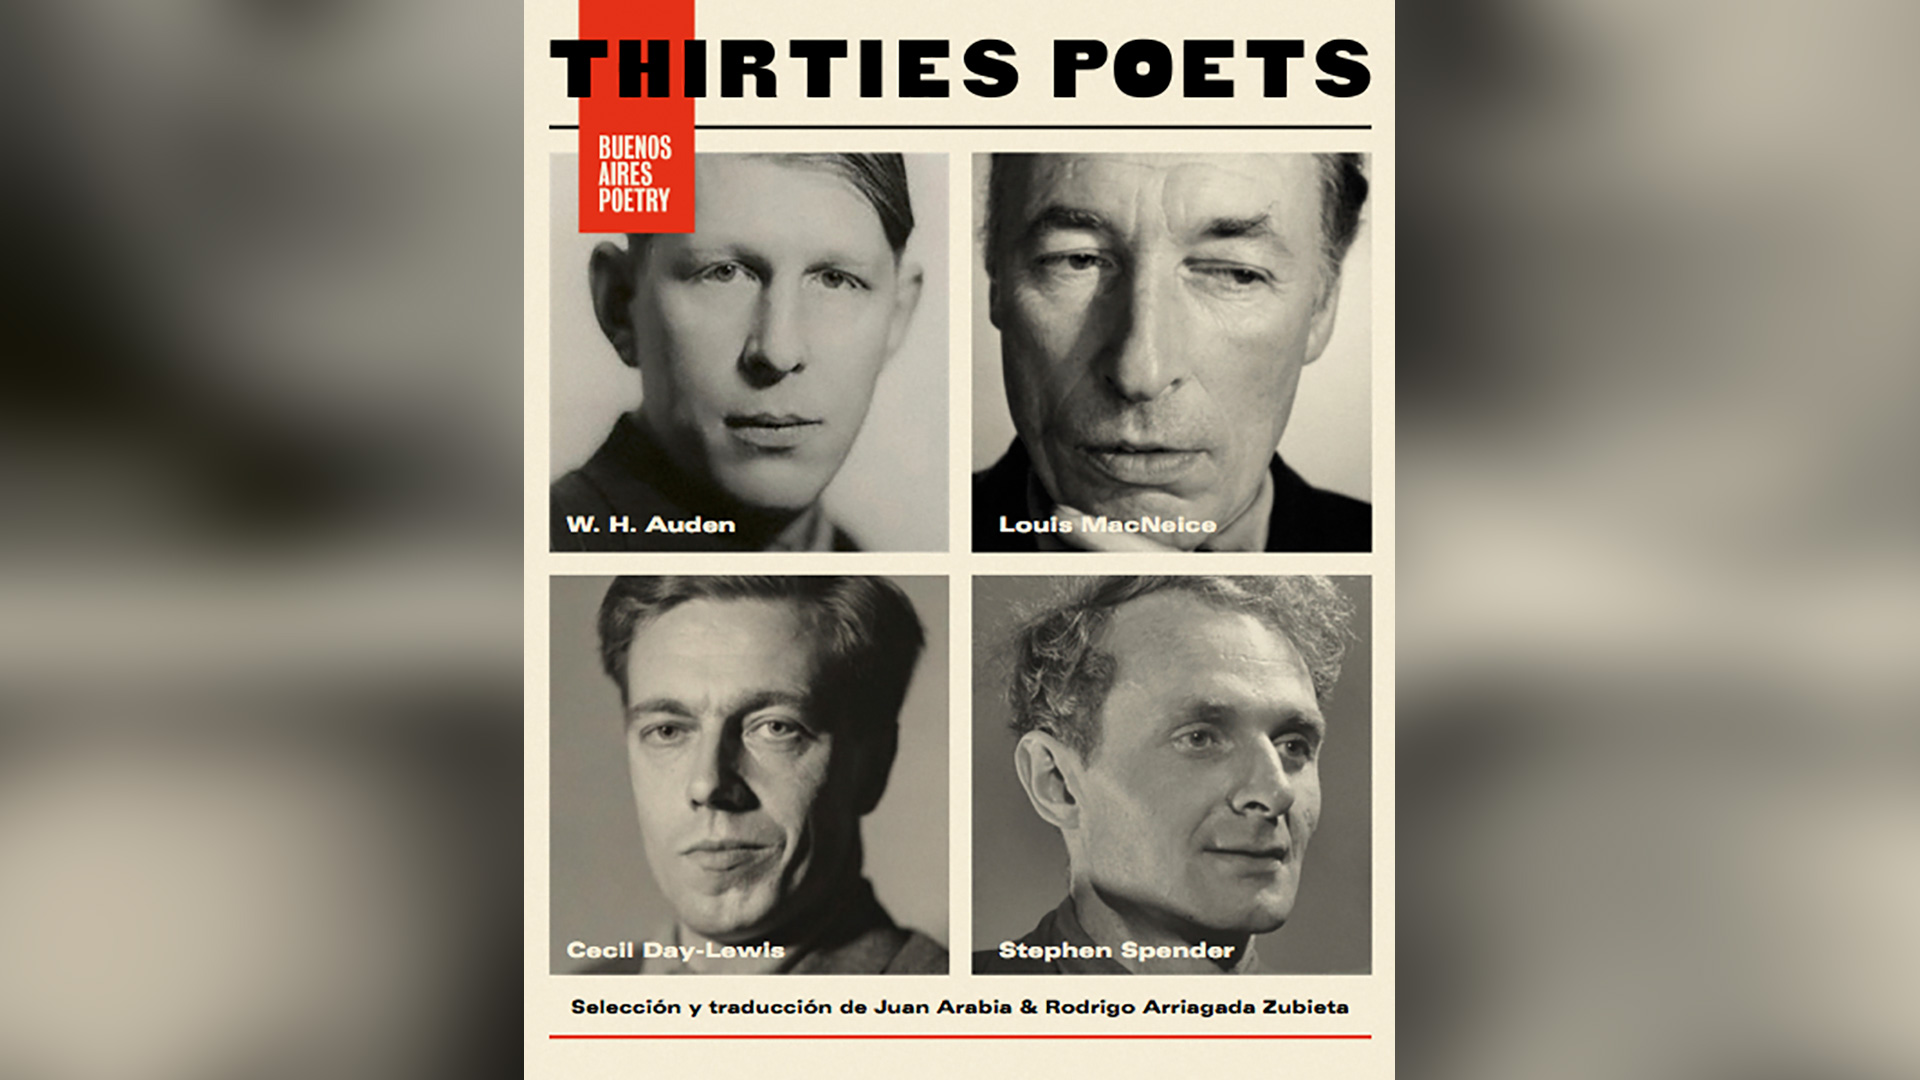  “Thirties poets” (Buenos Aires Poetry), selección y traducción de Juan Arabia y Rodrigo Arriagada Zubieta 